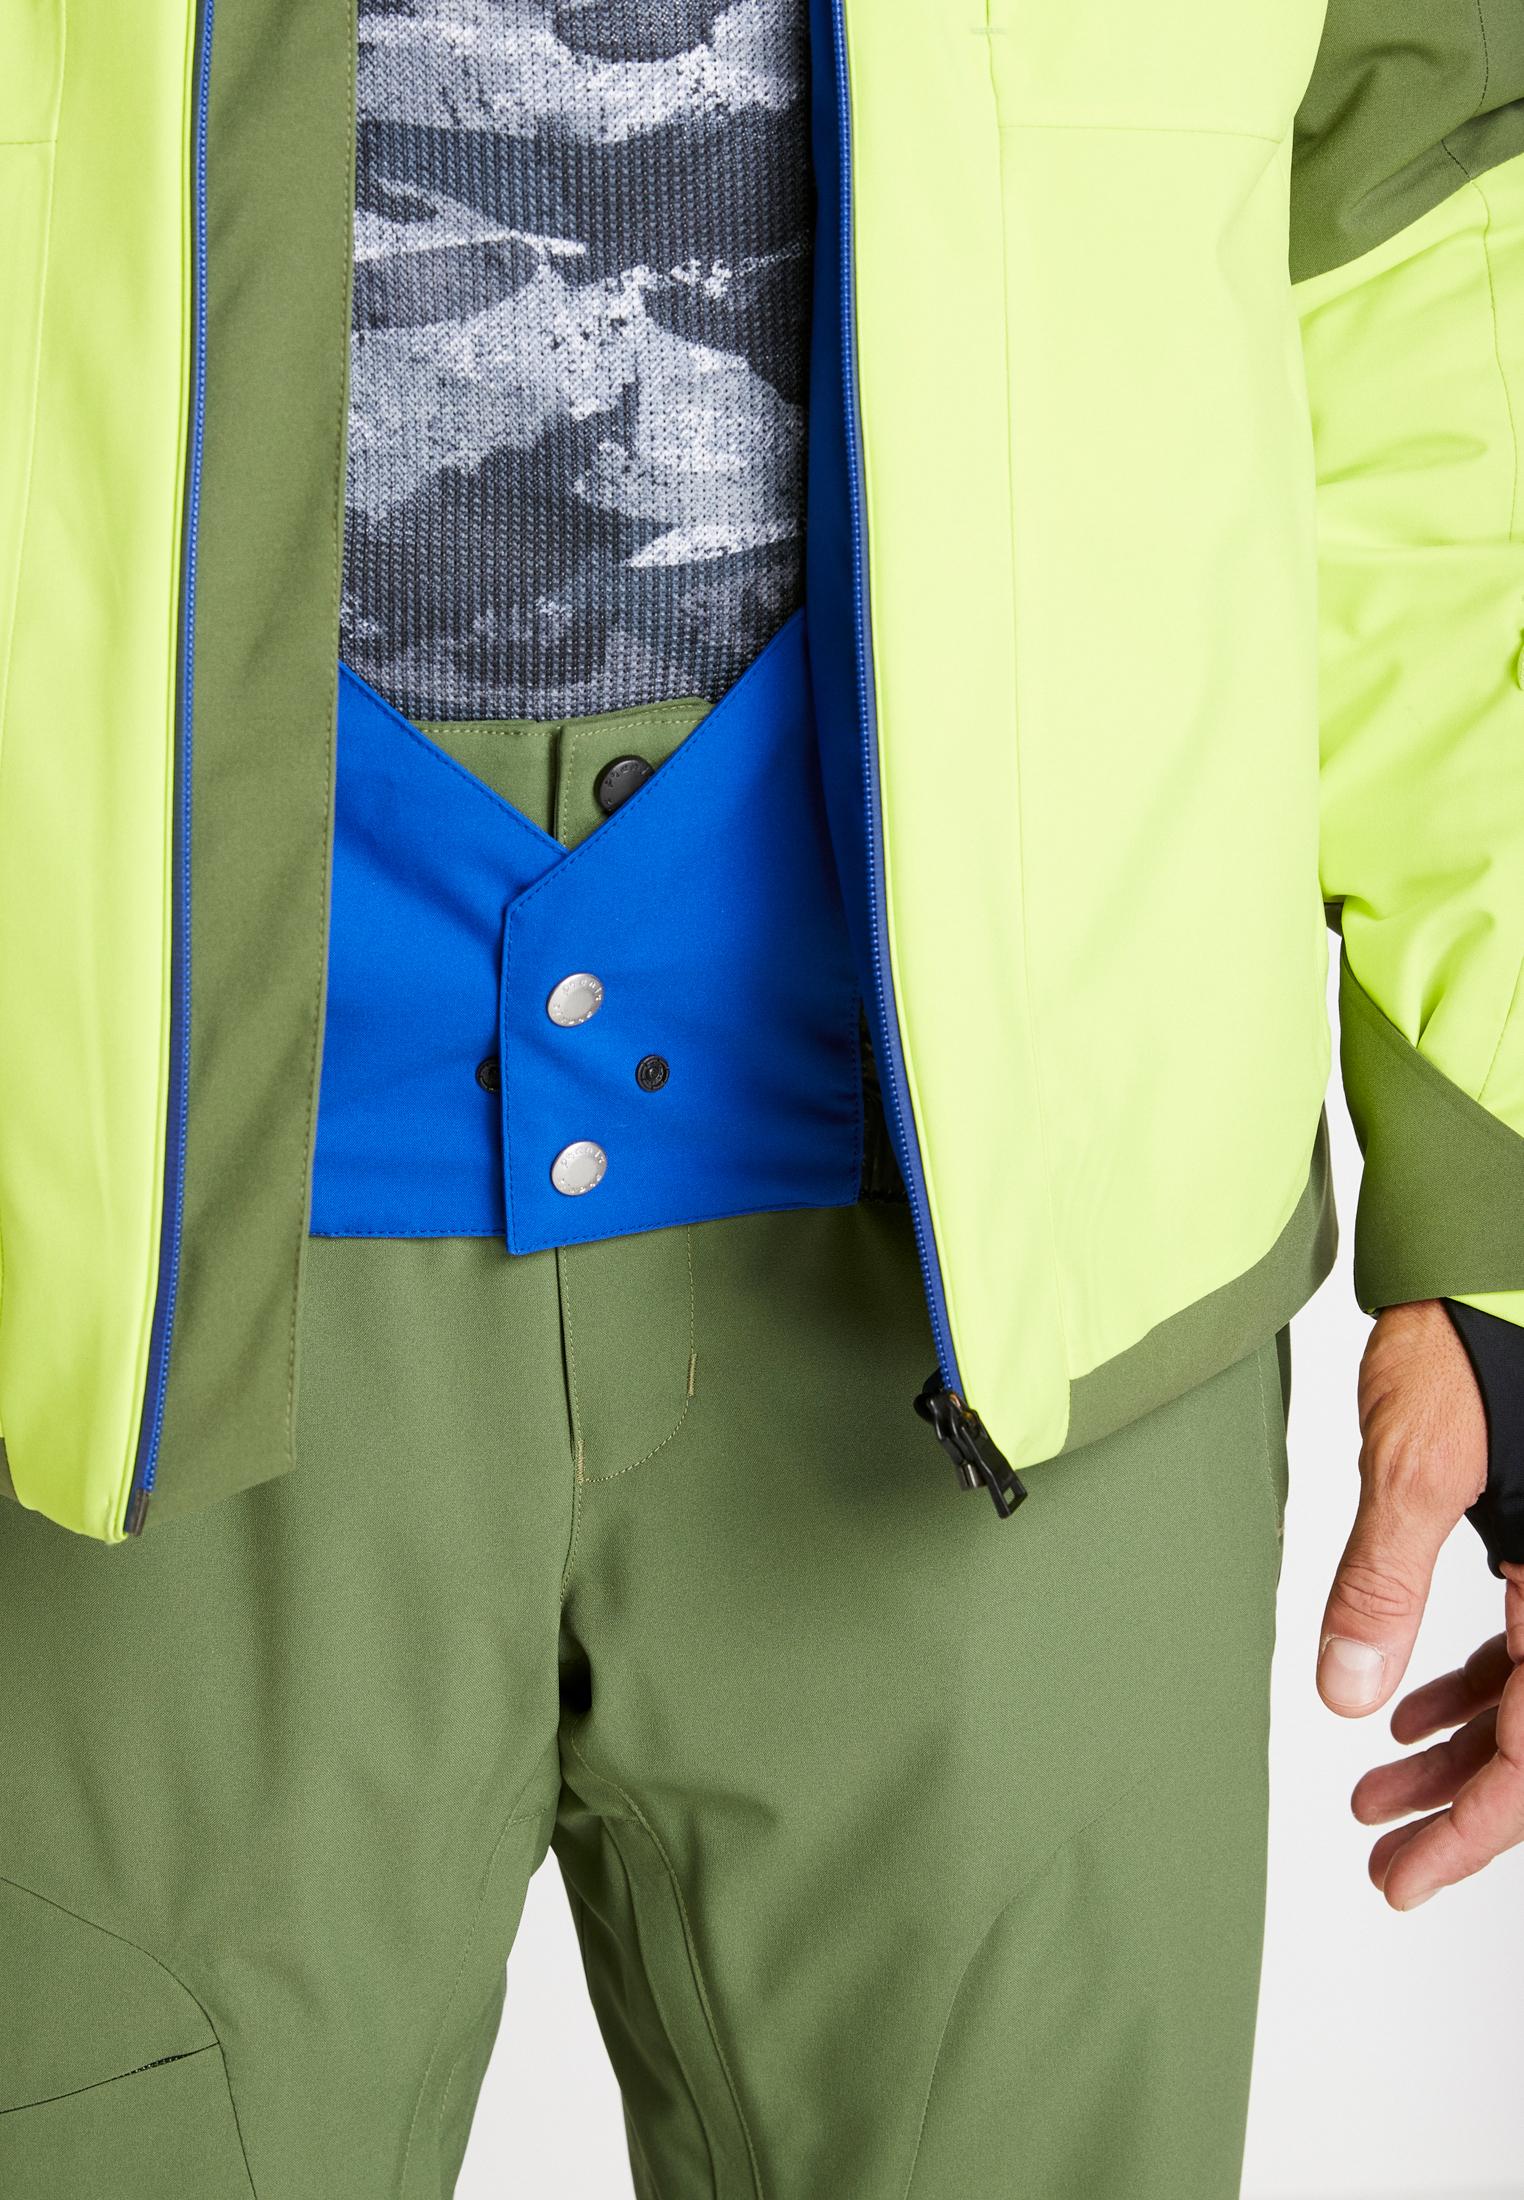 PHENIX SLOPE JACKET YELLOW/GREEN giacca sci da uomo » Sportclub